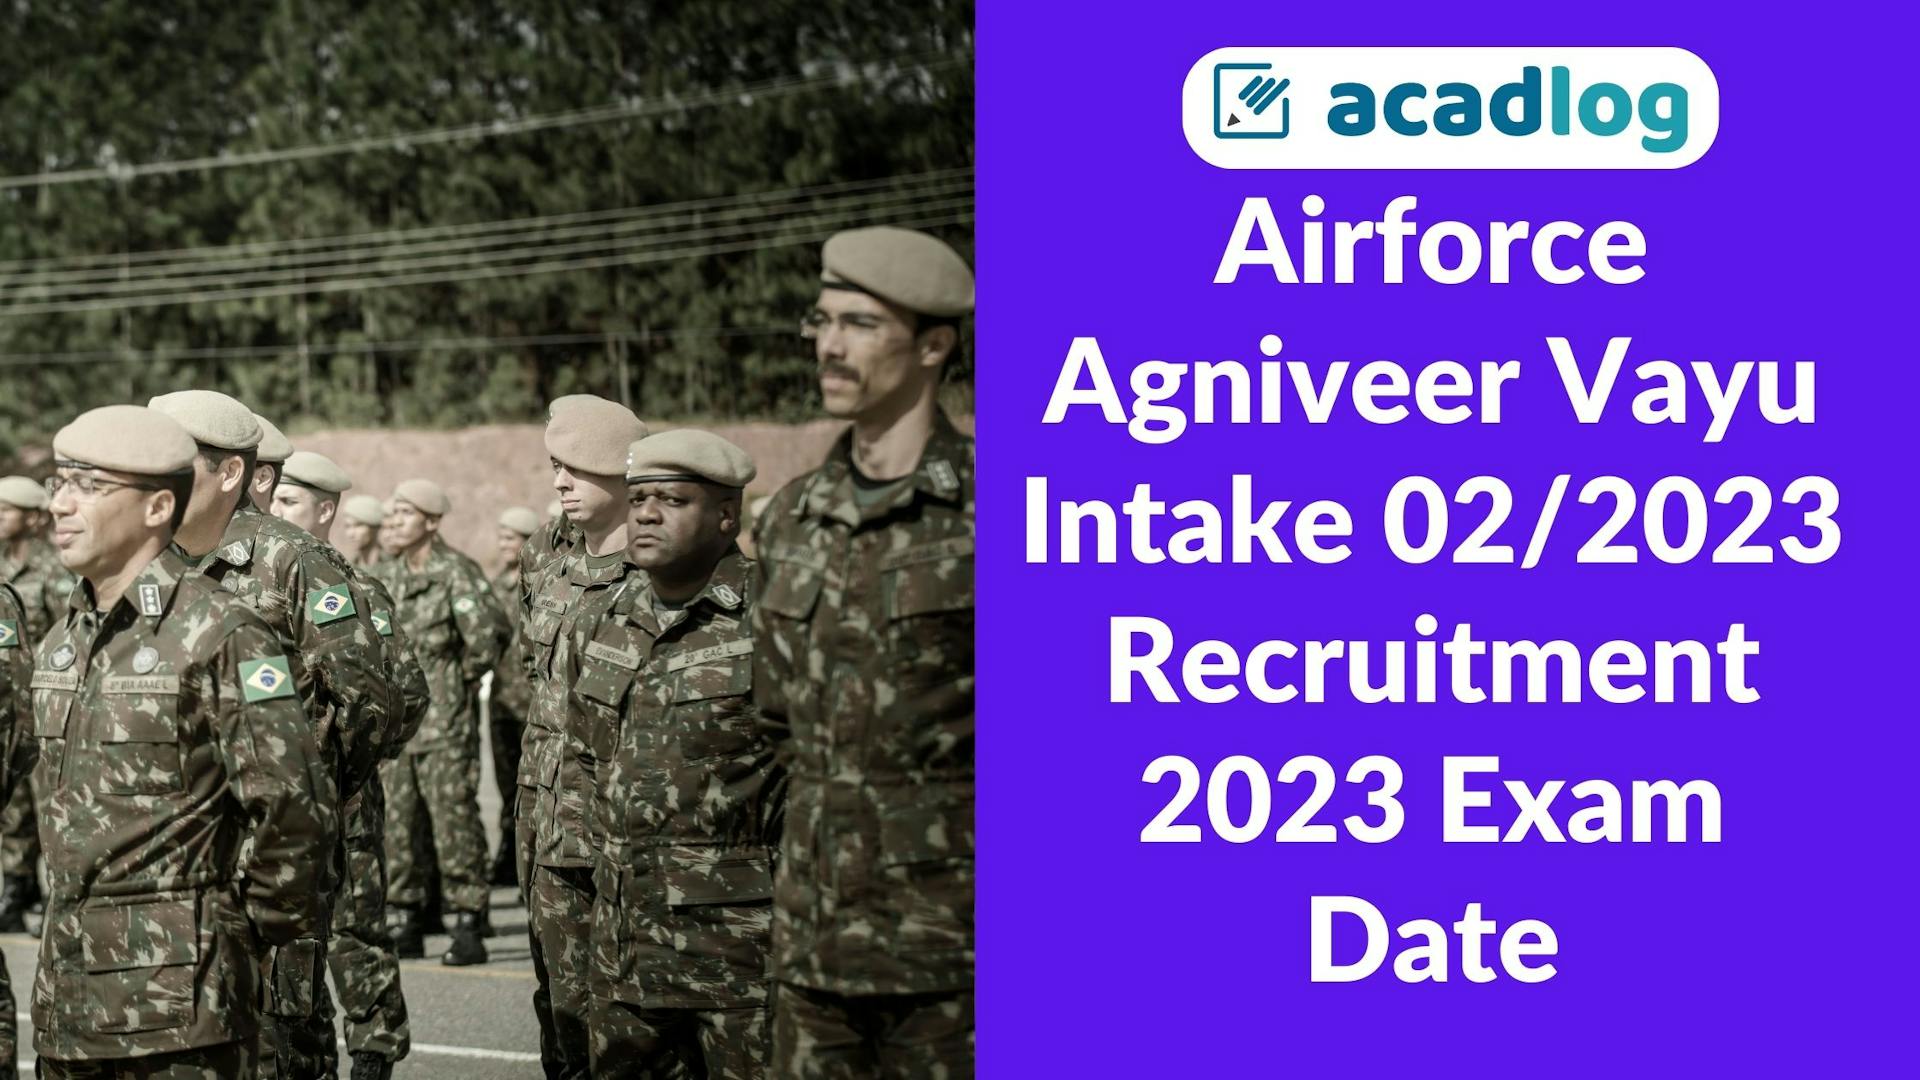 Airforce Agniveer Vayu Intake 02/2023 Recruitment 2023 Exam Date / City